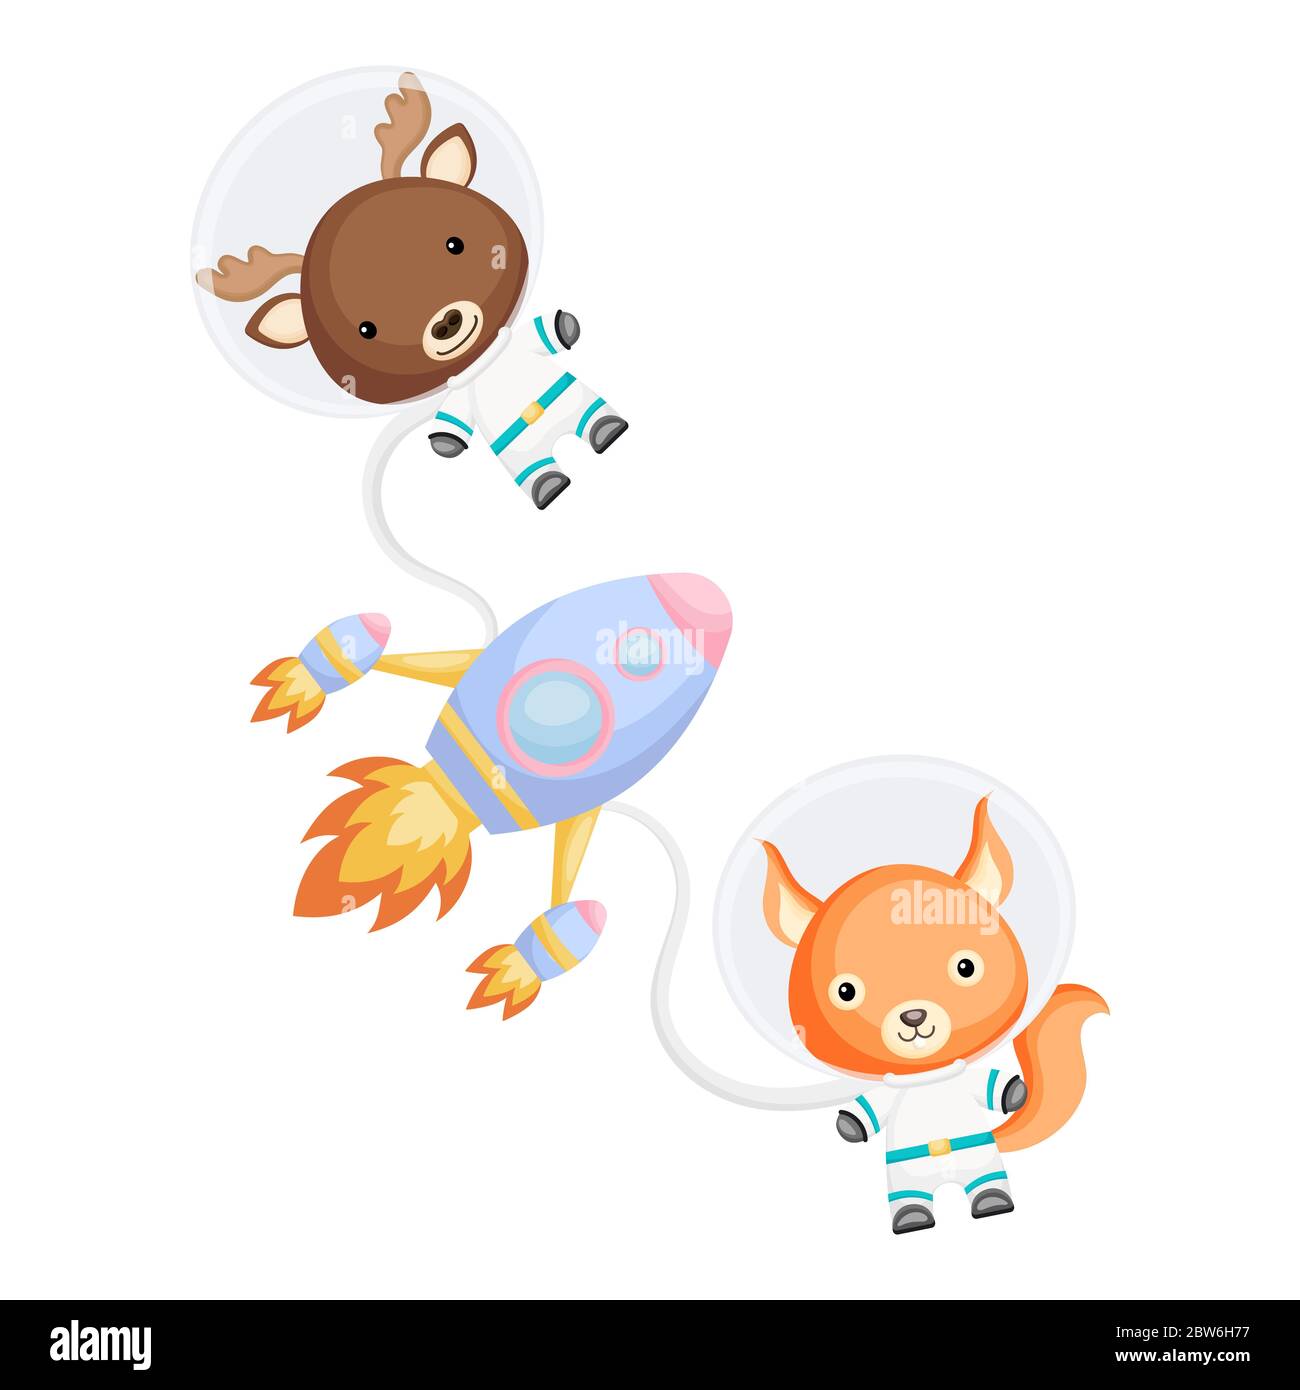 Carino astronauti a forma di alci e scoiattoli che volano in spazi aperti. Elemento grafico per libro, album, album, cartolina, invito per bambini. Illustrazione Vettoriale